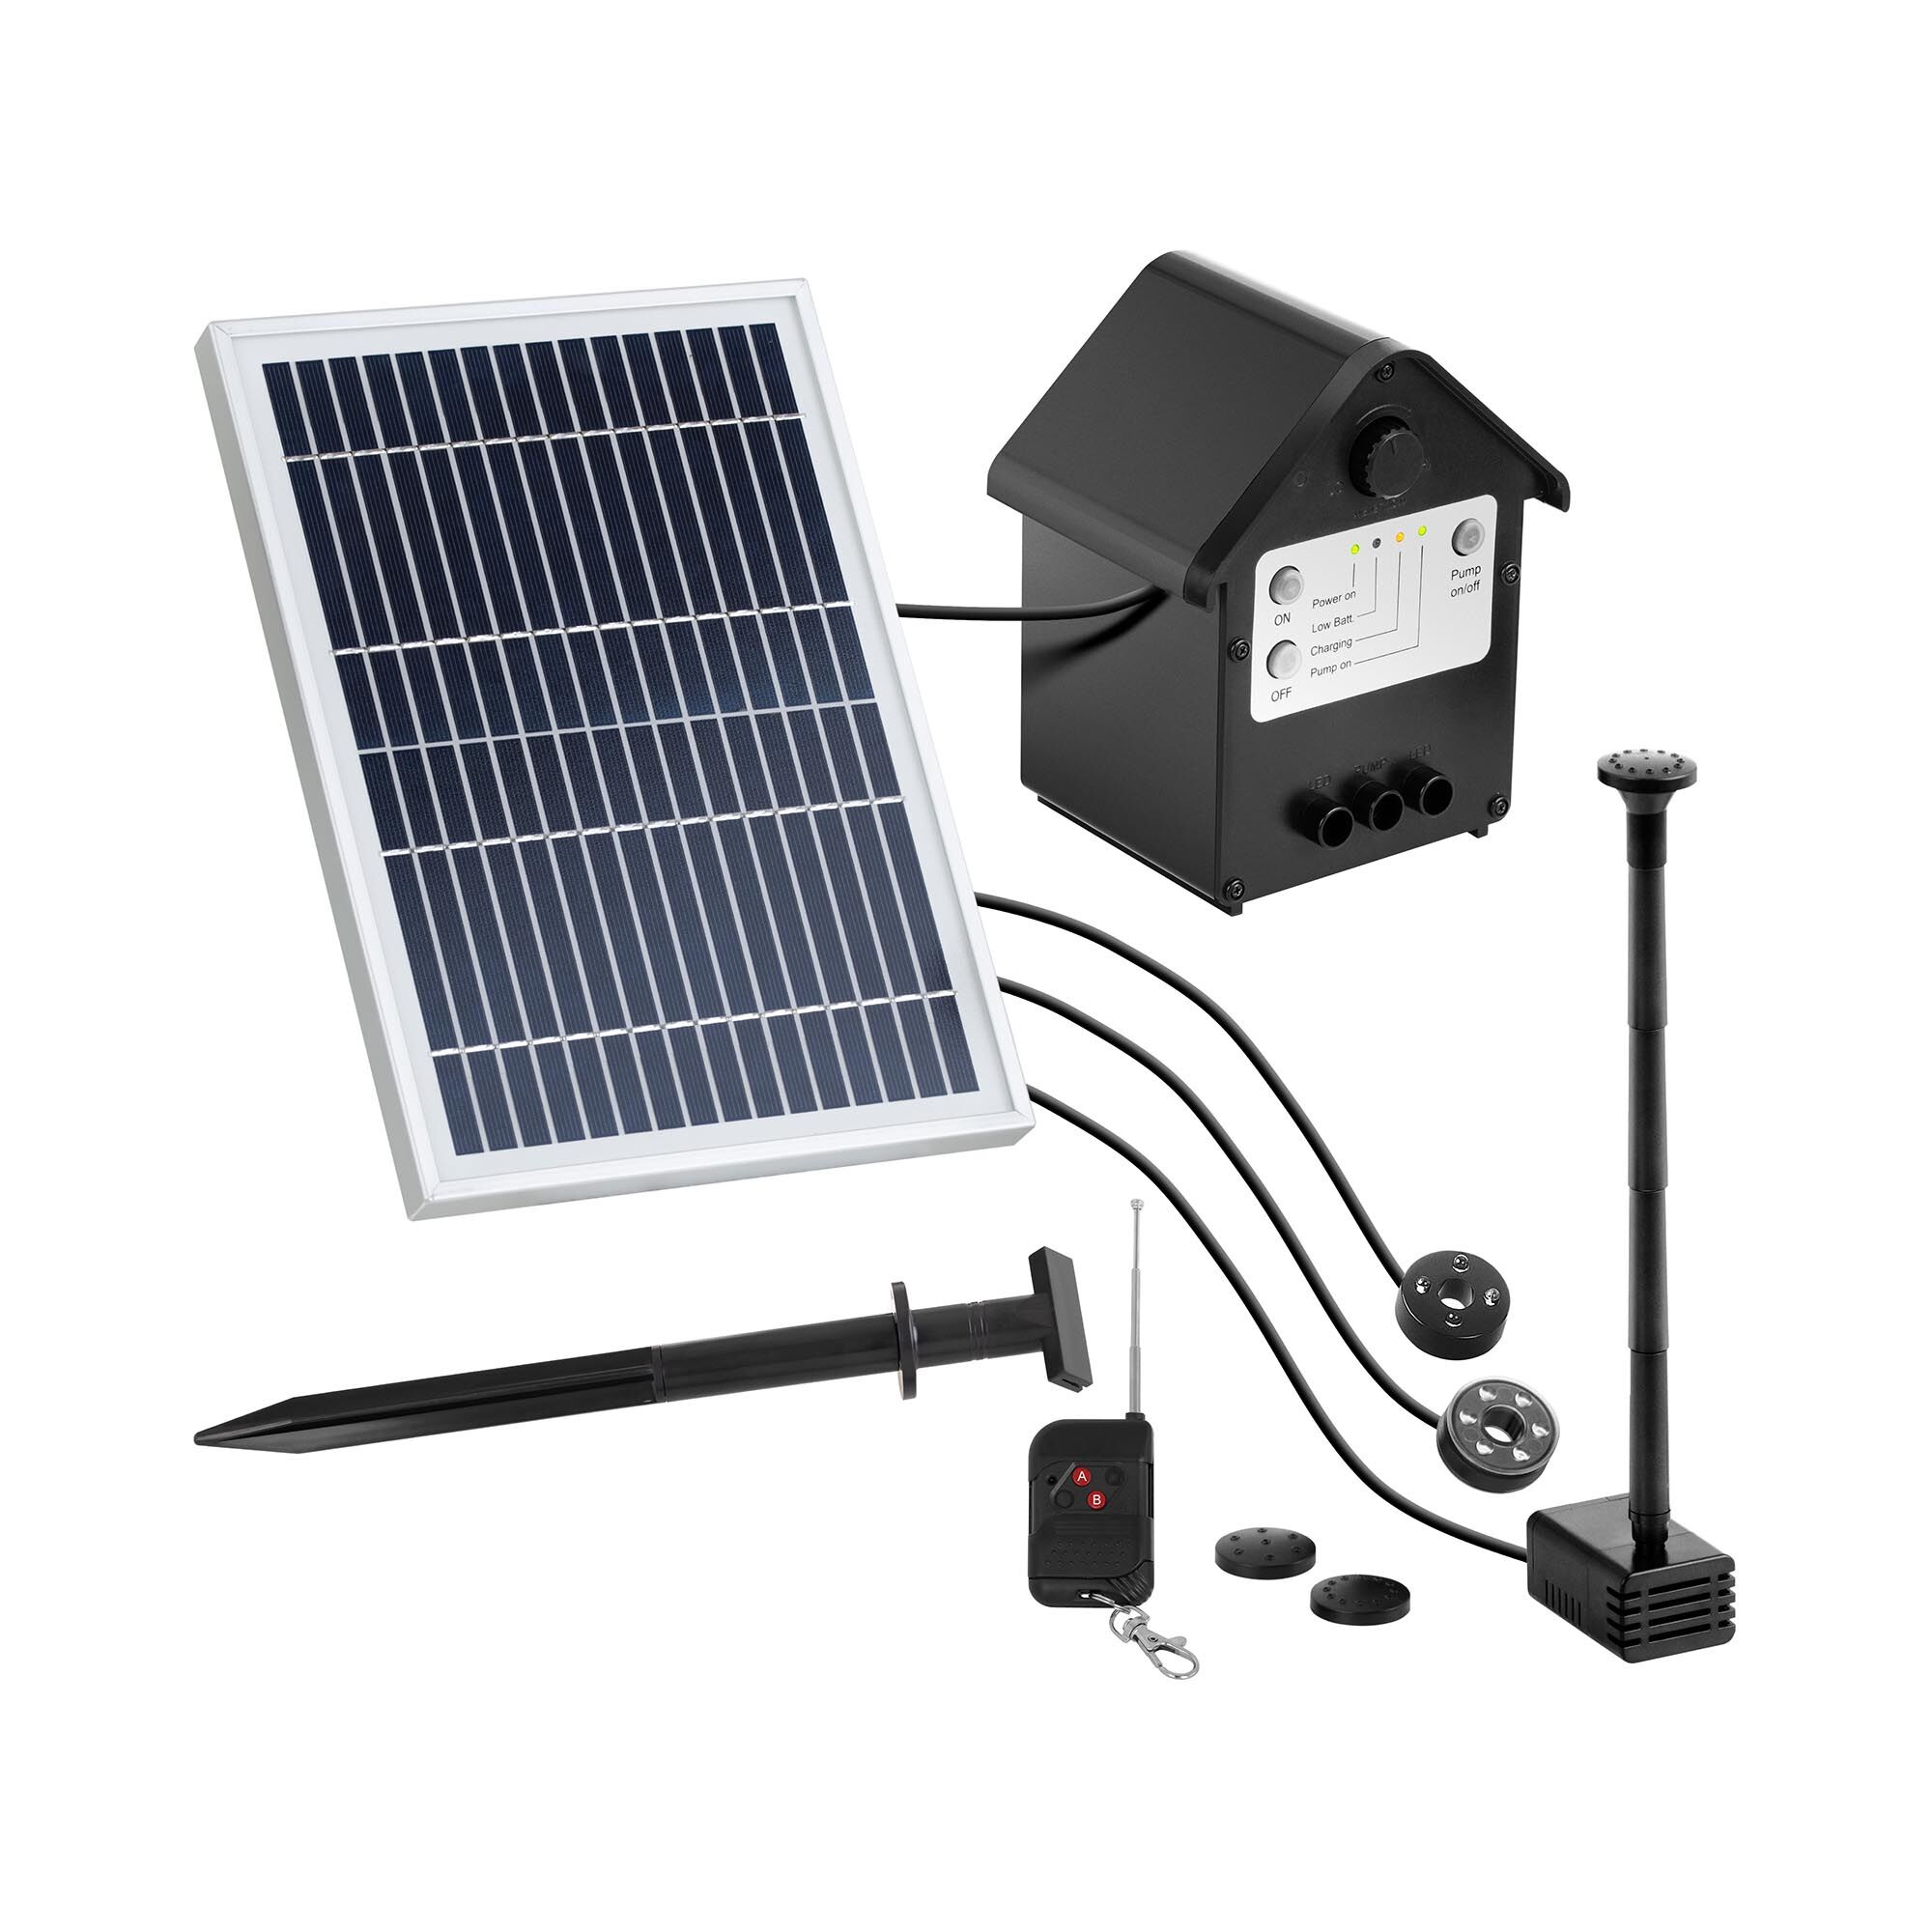 Uniprodo Pompa laghetto solare - 250 l/h - LED - con telecomando UNI_PUMP_12